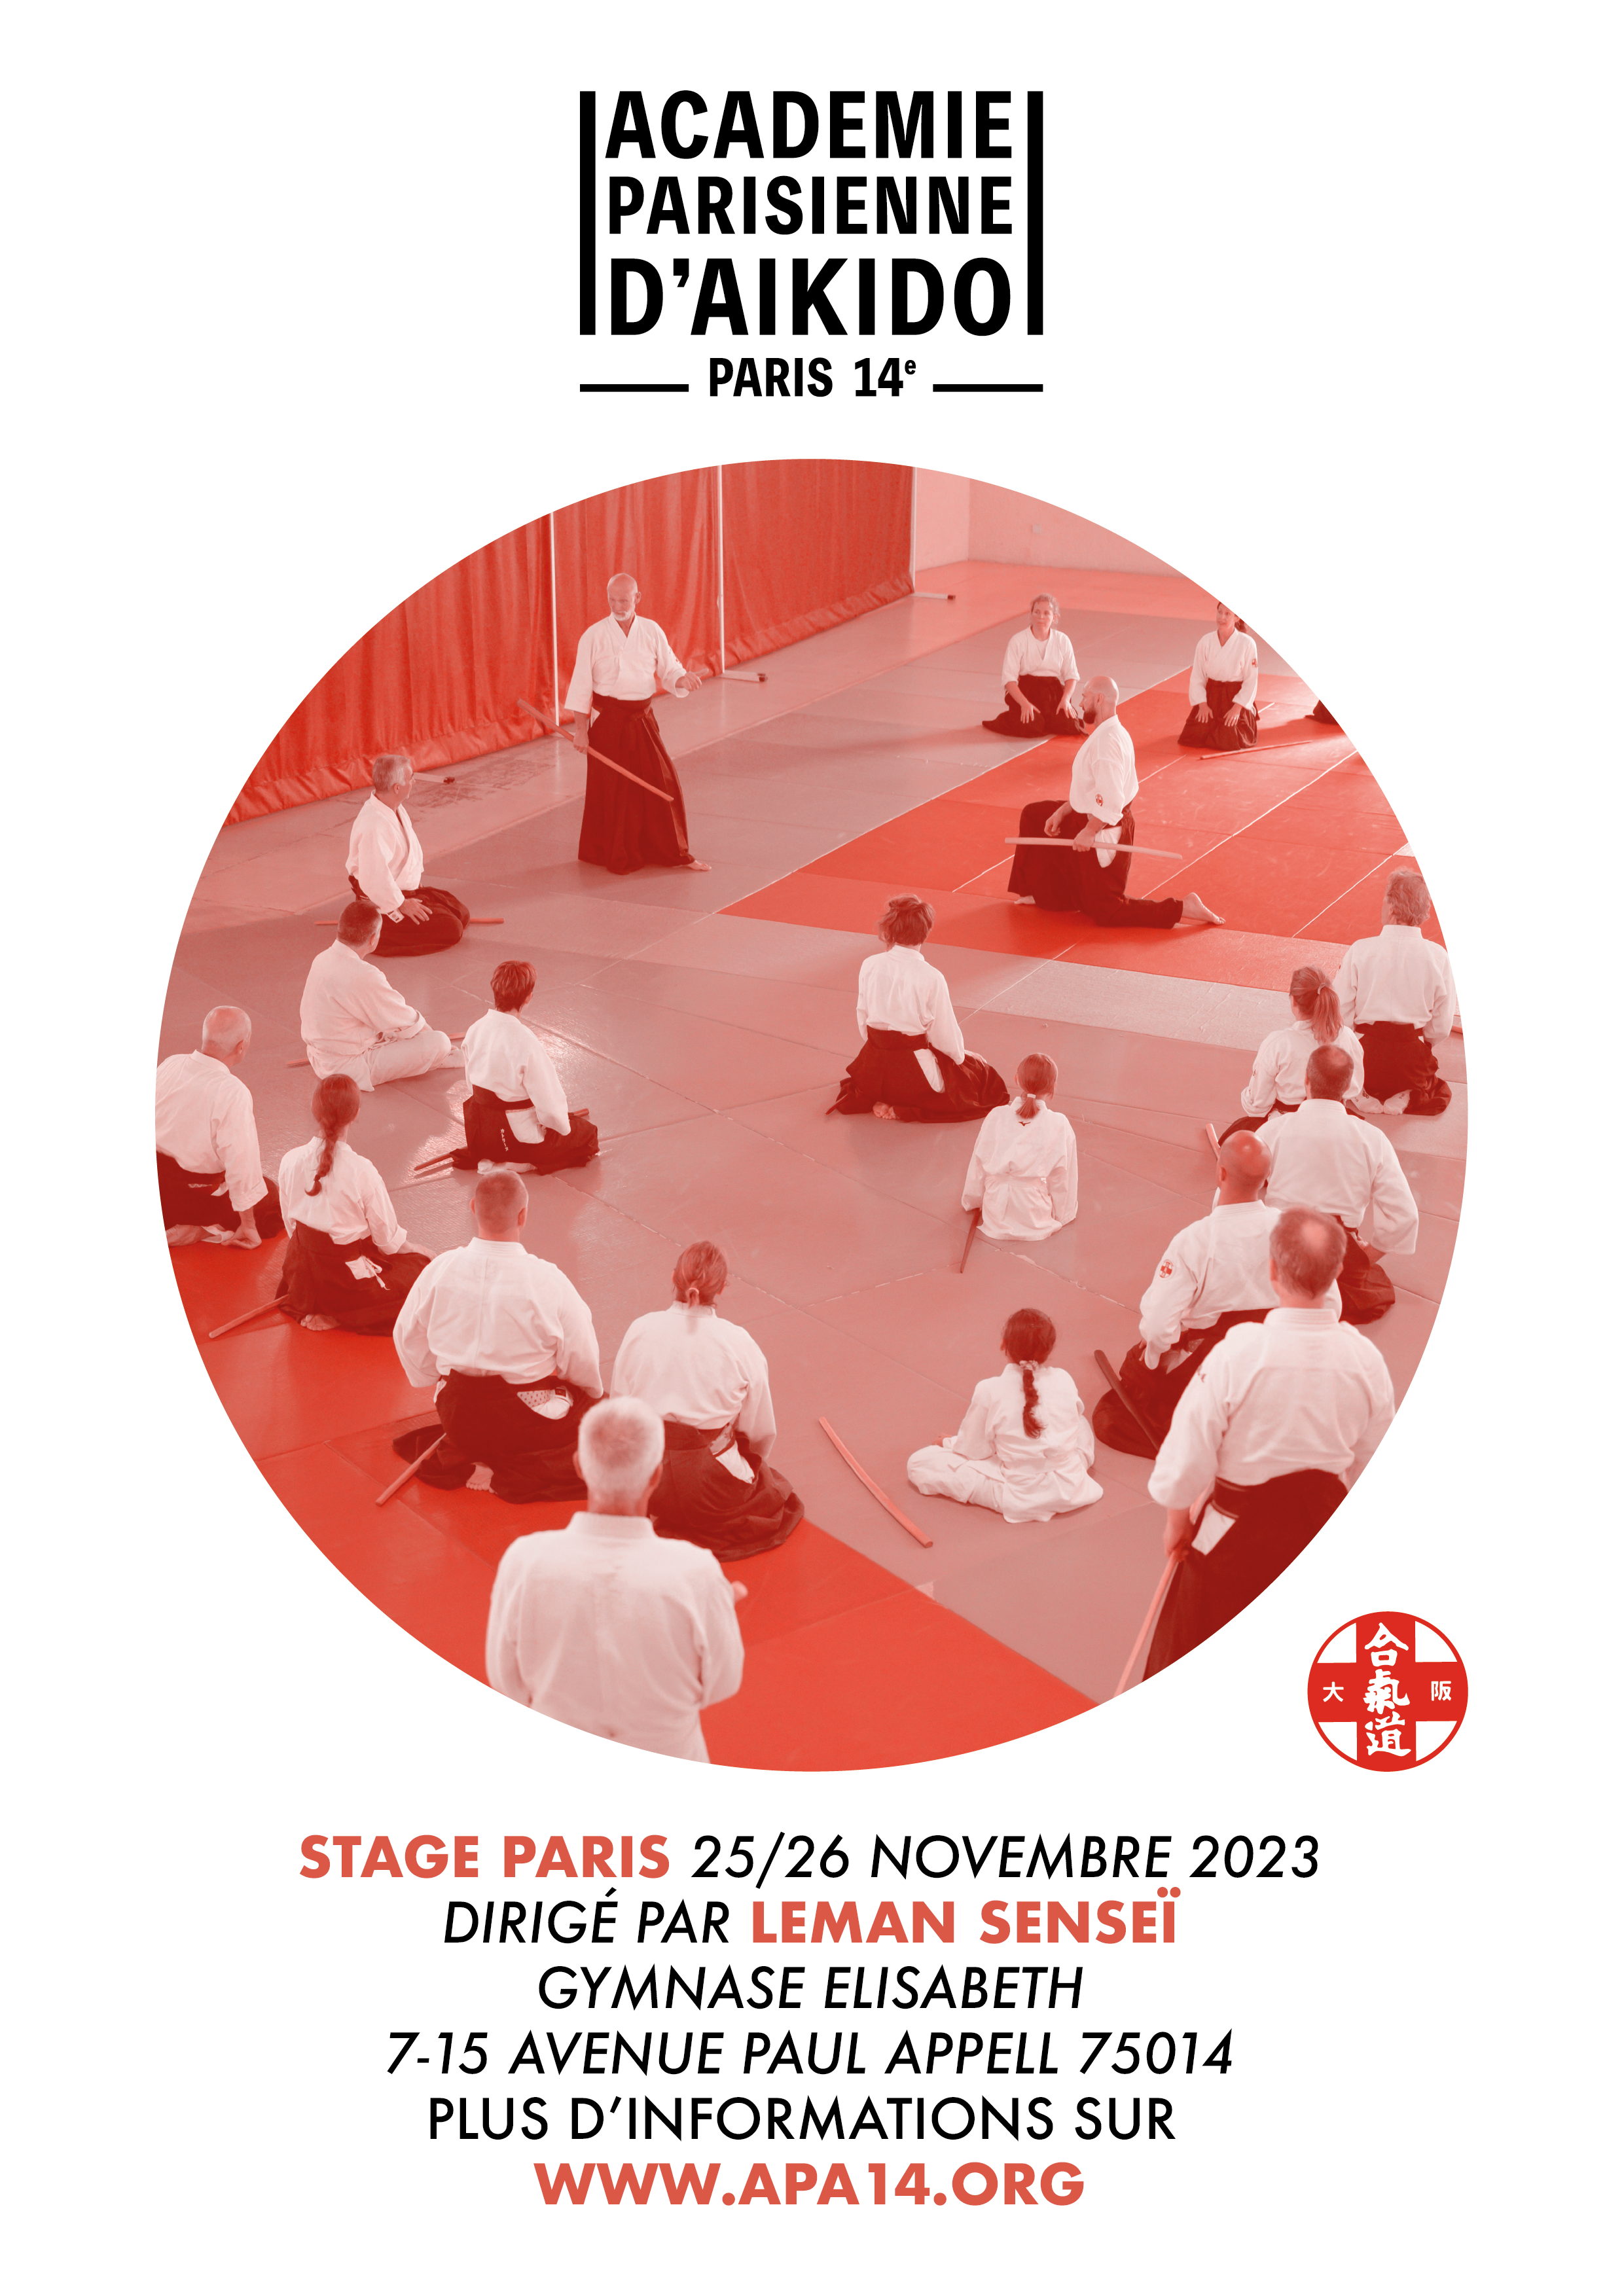 Affiche du Stage d'Aïkido à Paris animé par Etienne Leman du samedi 25 novembre 2023 au dimanche 26 novembre 2023